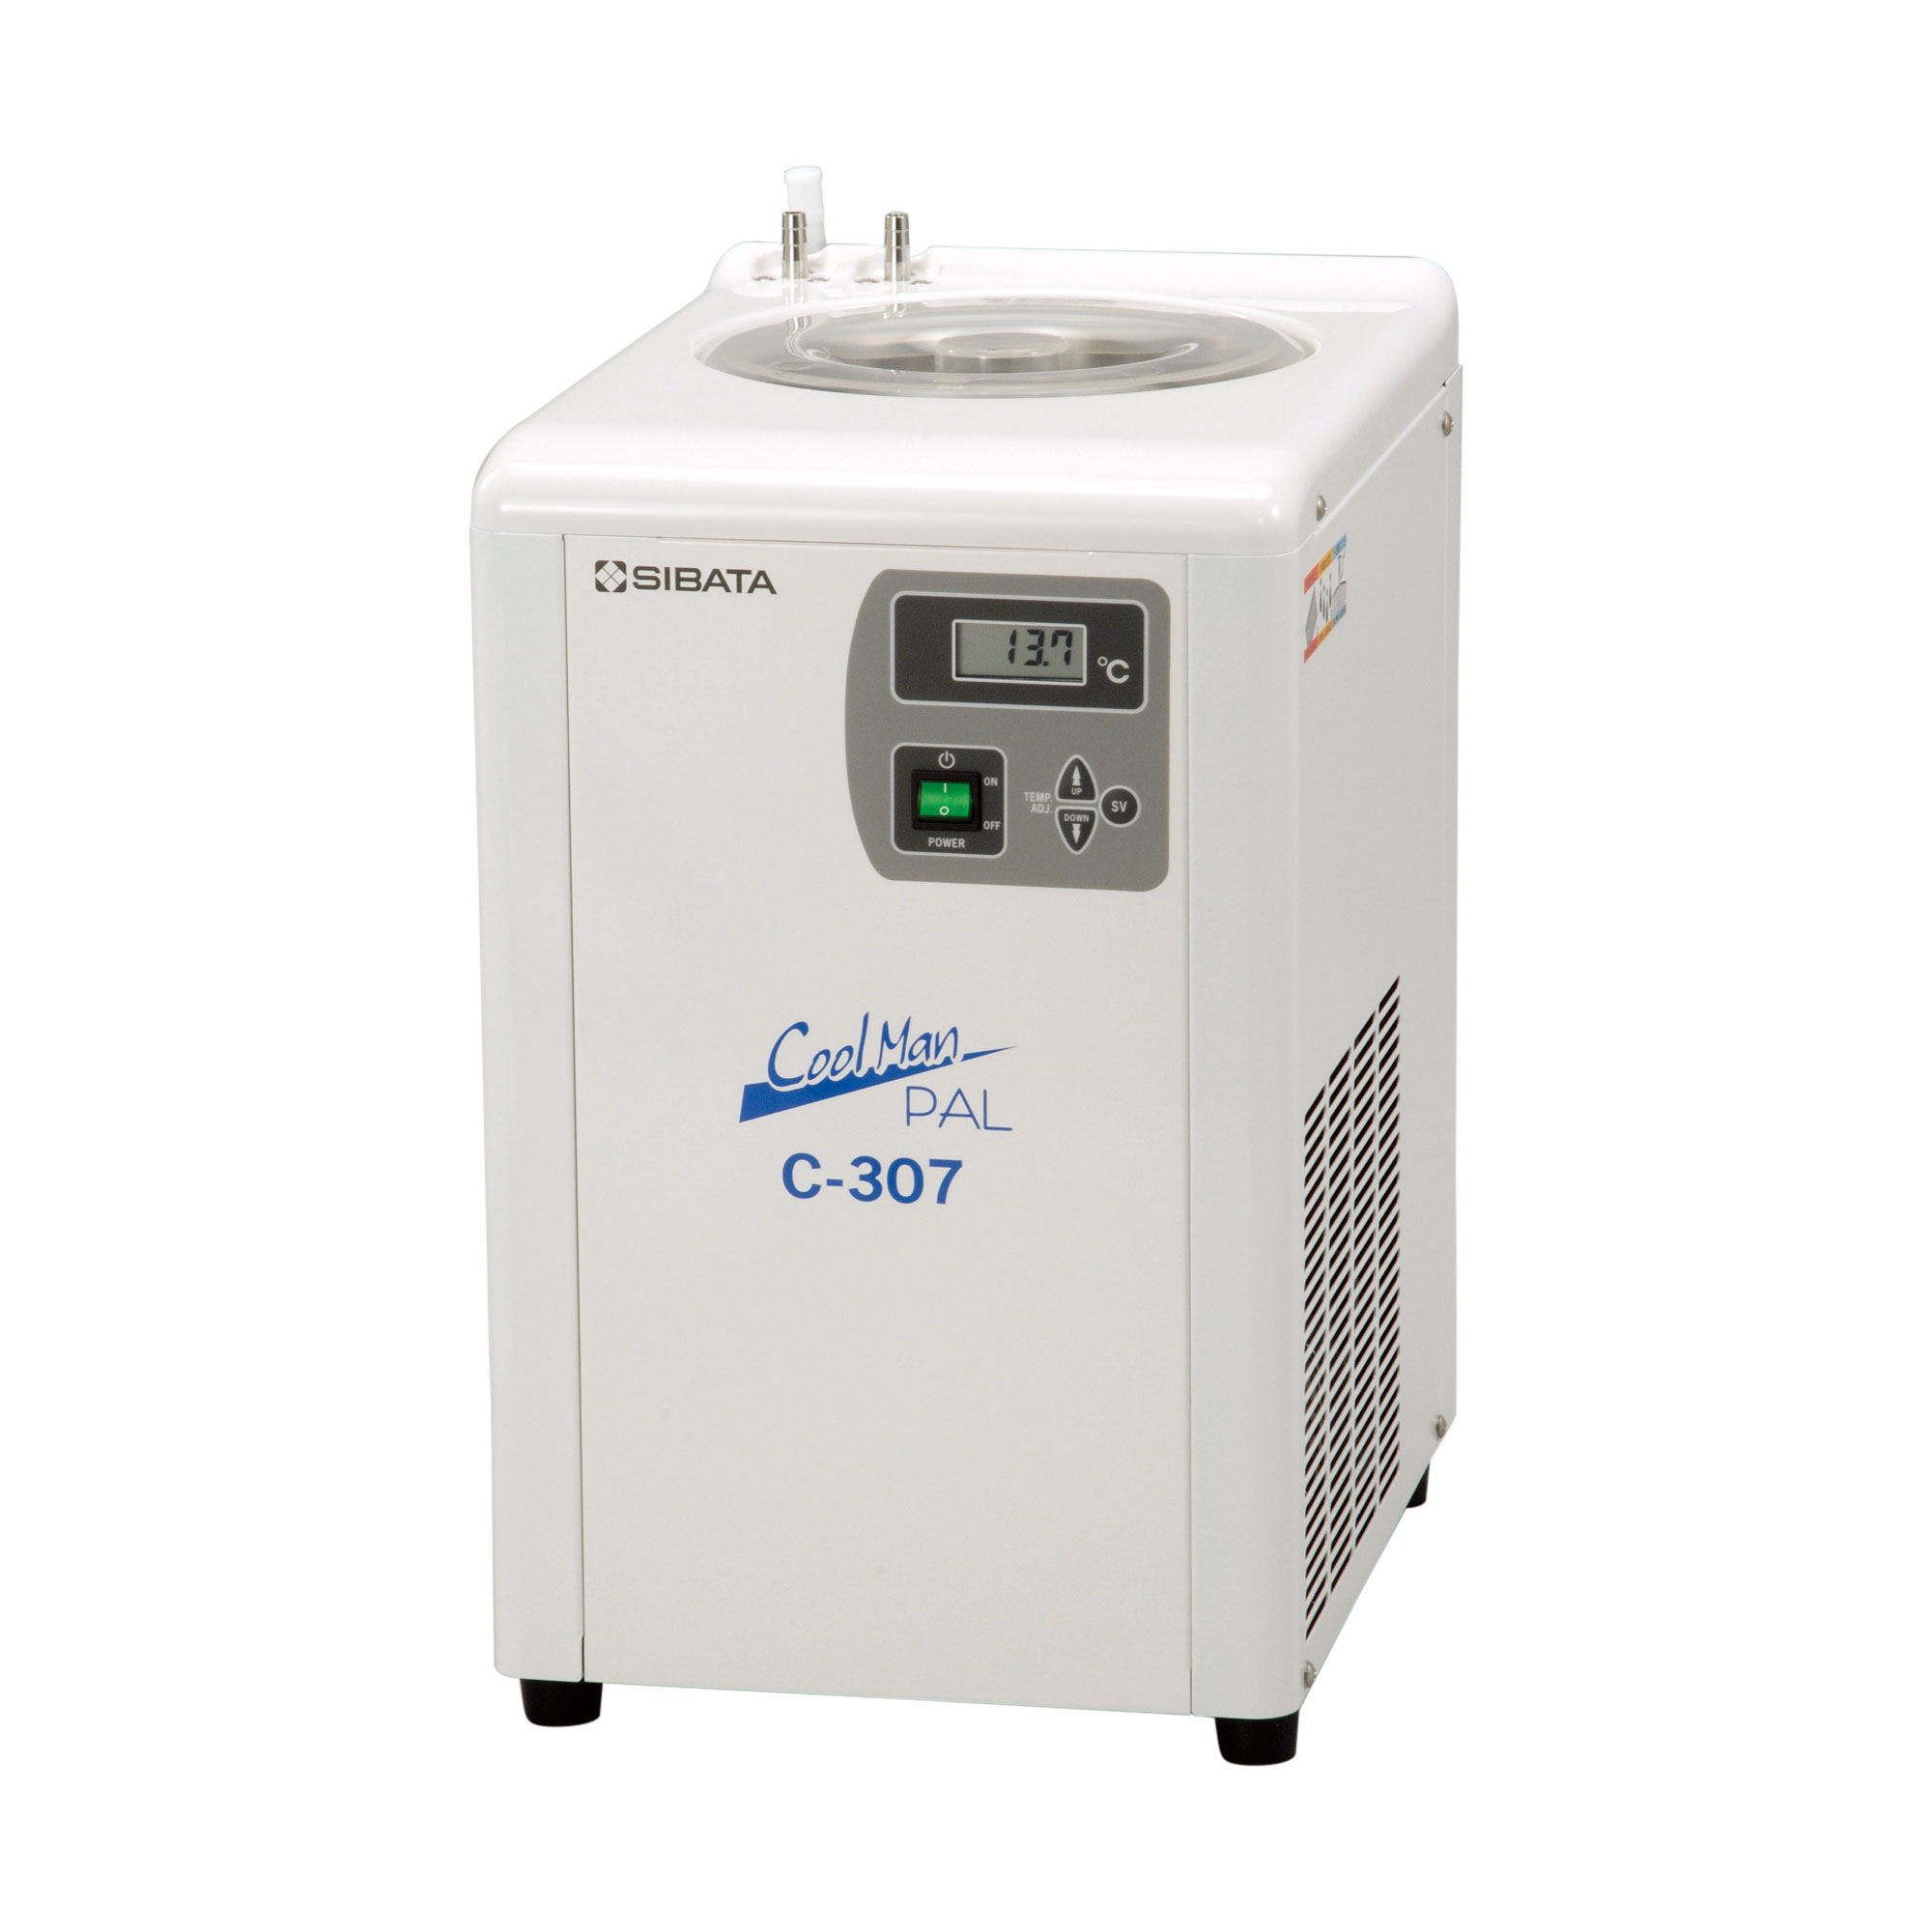 柴田科学低温循环水箱Cool Manpal C-307型